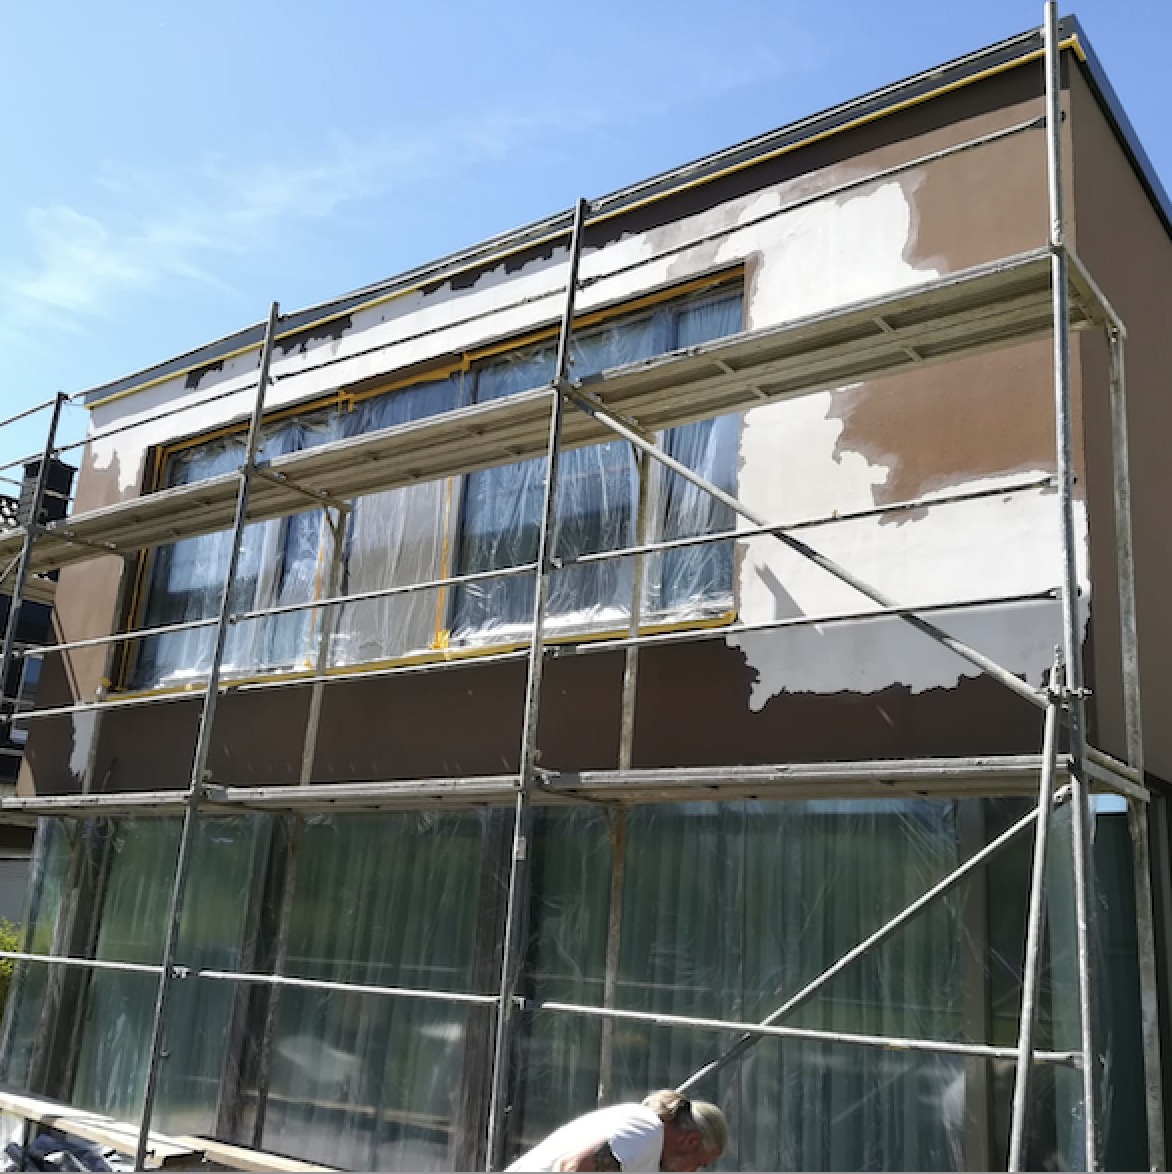 Reparaturarbeiten an Hausfassade ausgeführt von Stukkateur Jungkunst aus Bochum - Stuckateur-Fachbetrieb - Meisterbetrieb